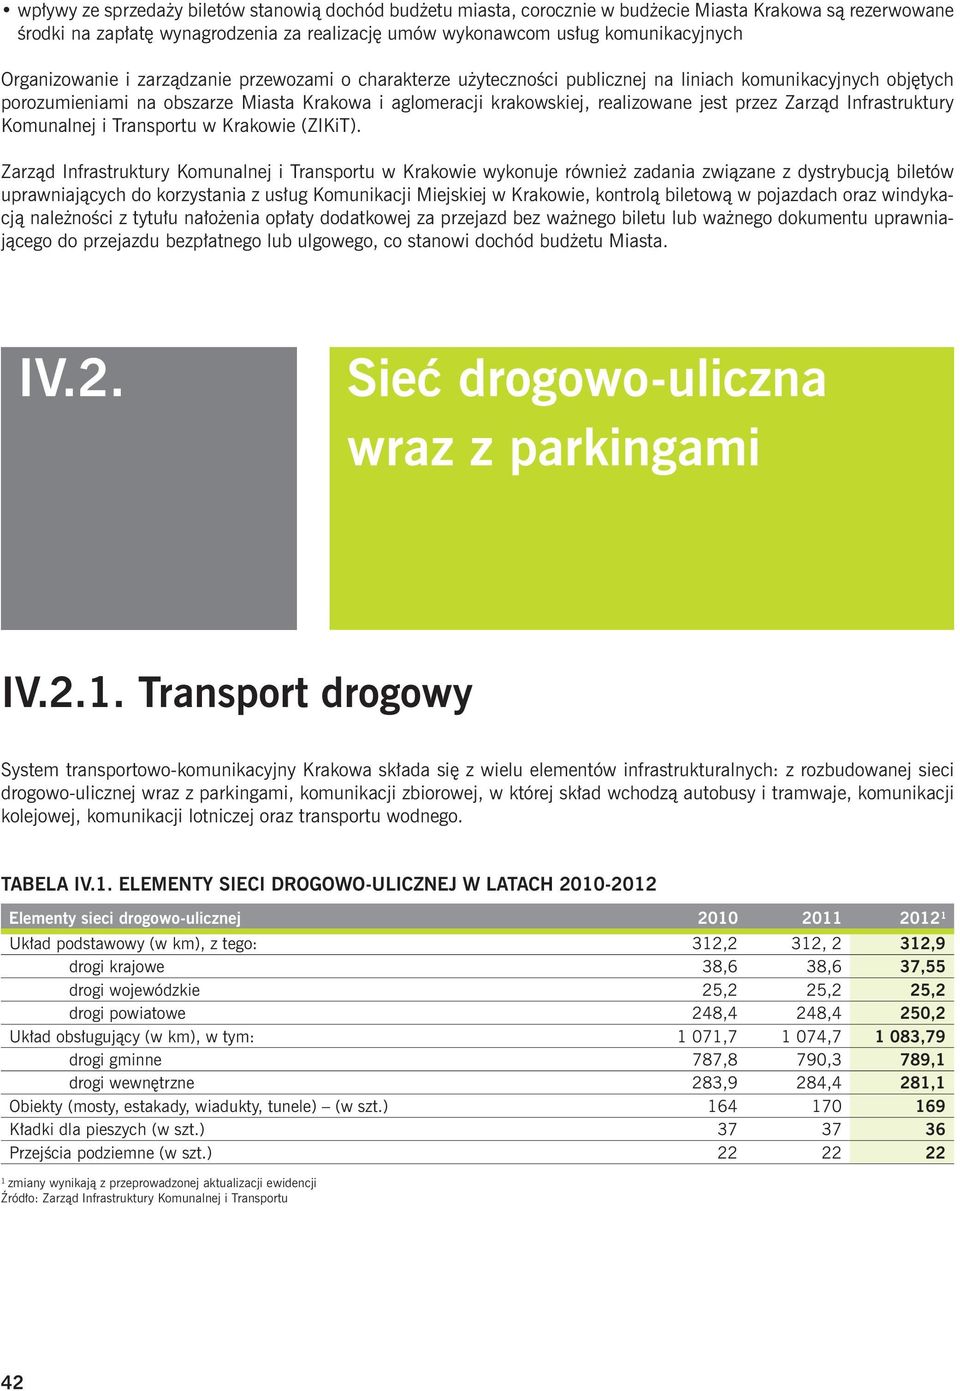 przez Zarząd Infrastruktury Komunalnej i Transportu w Krakowie (ZIKiT).